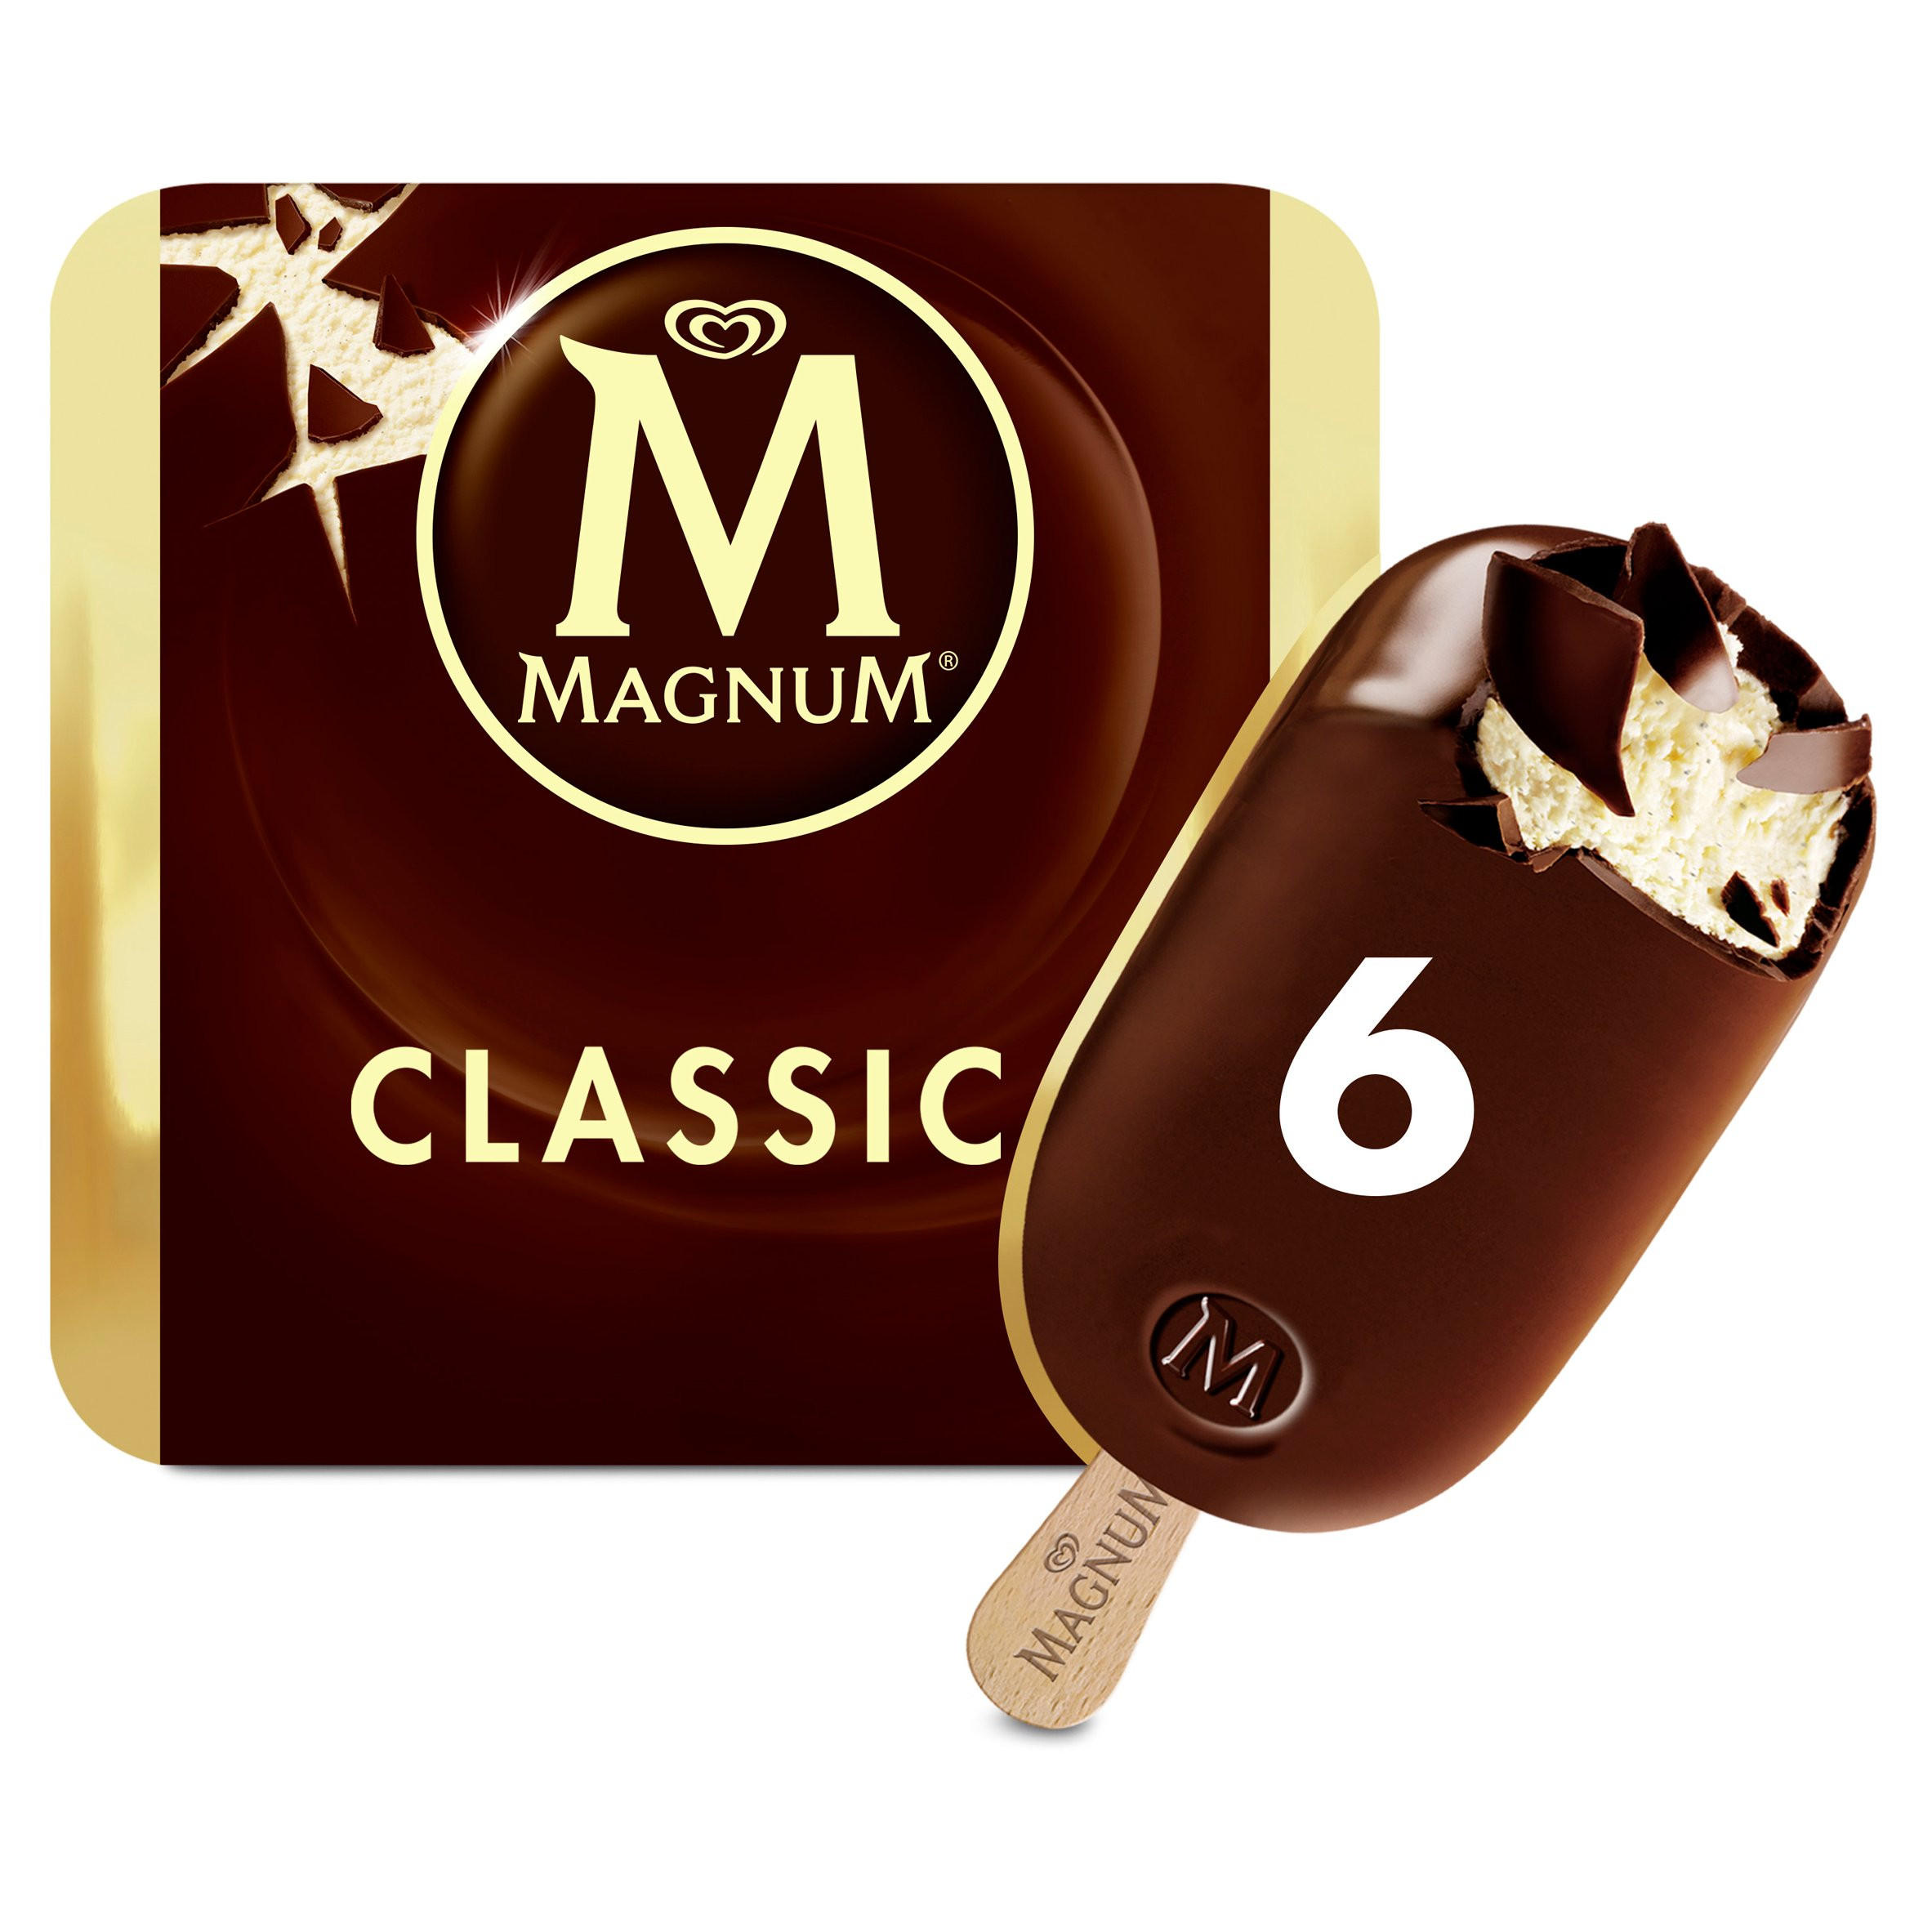 Magnum Classic Ice Cream 6 x 110 ml | Ice Cream Cones, Sticks & Bars ...